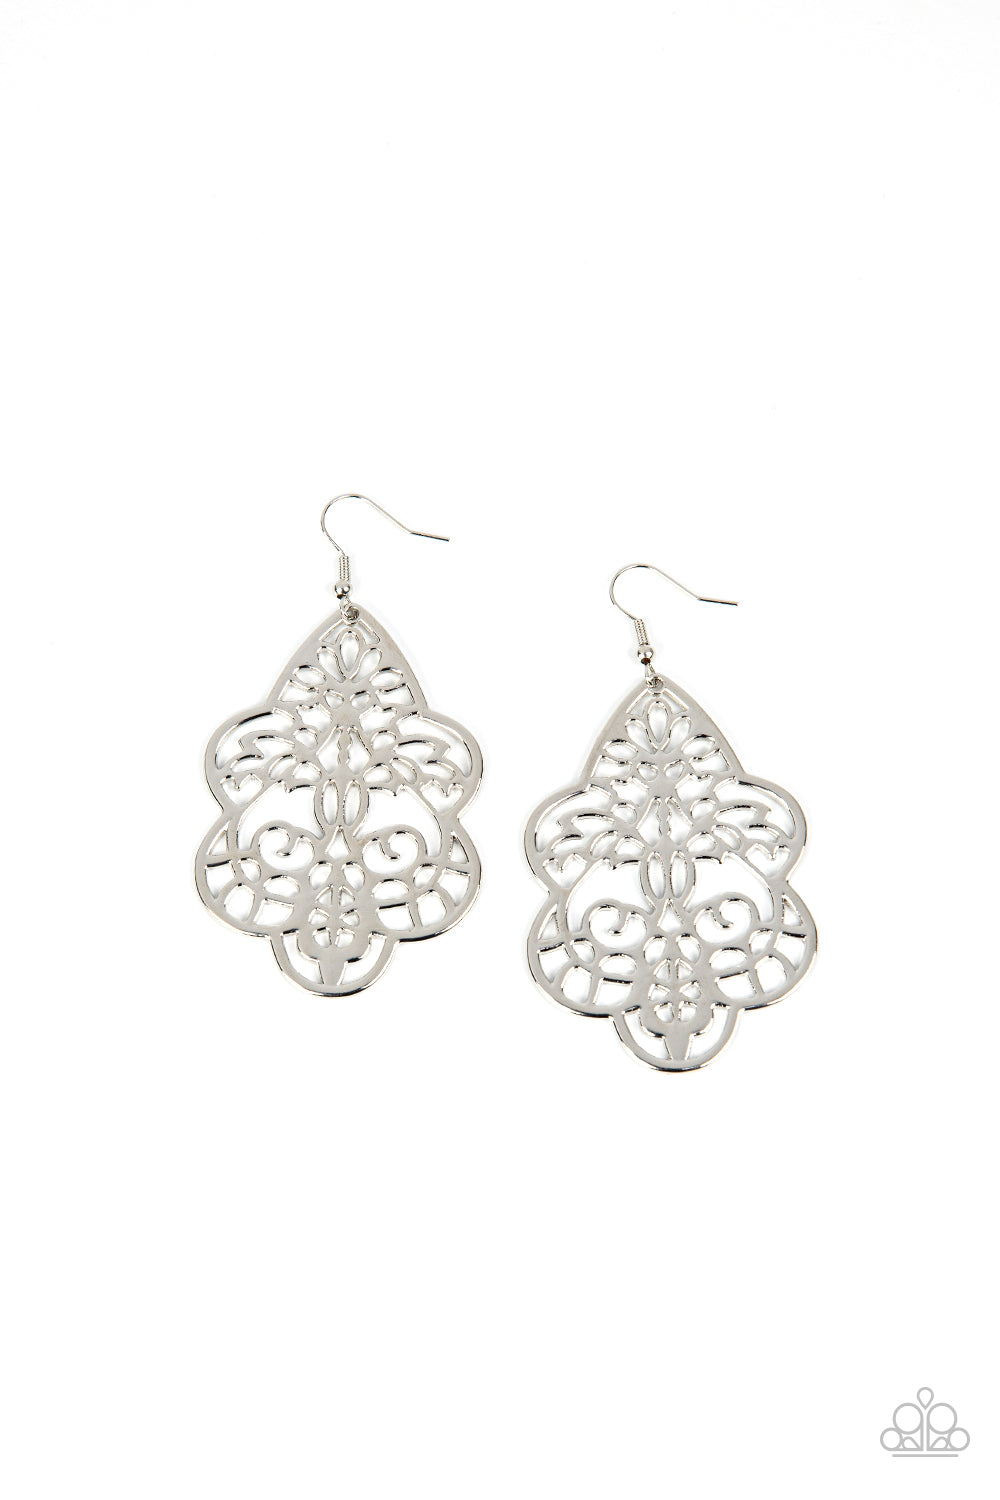 oak-sisters-jewelry-festive-foliage-silver-earrings-paparazzi-accessories-by-lisa